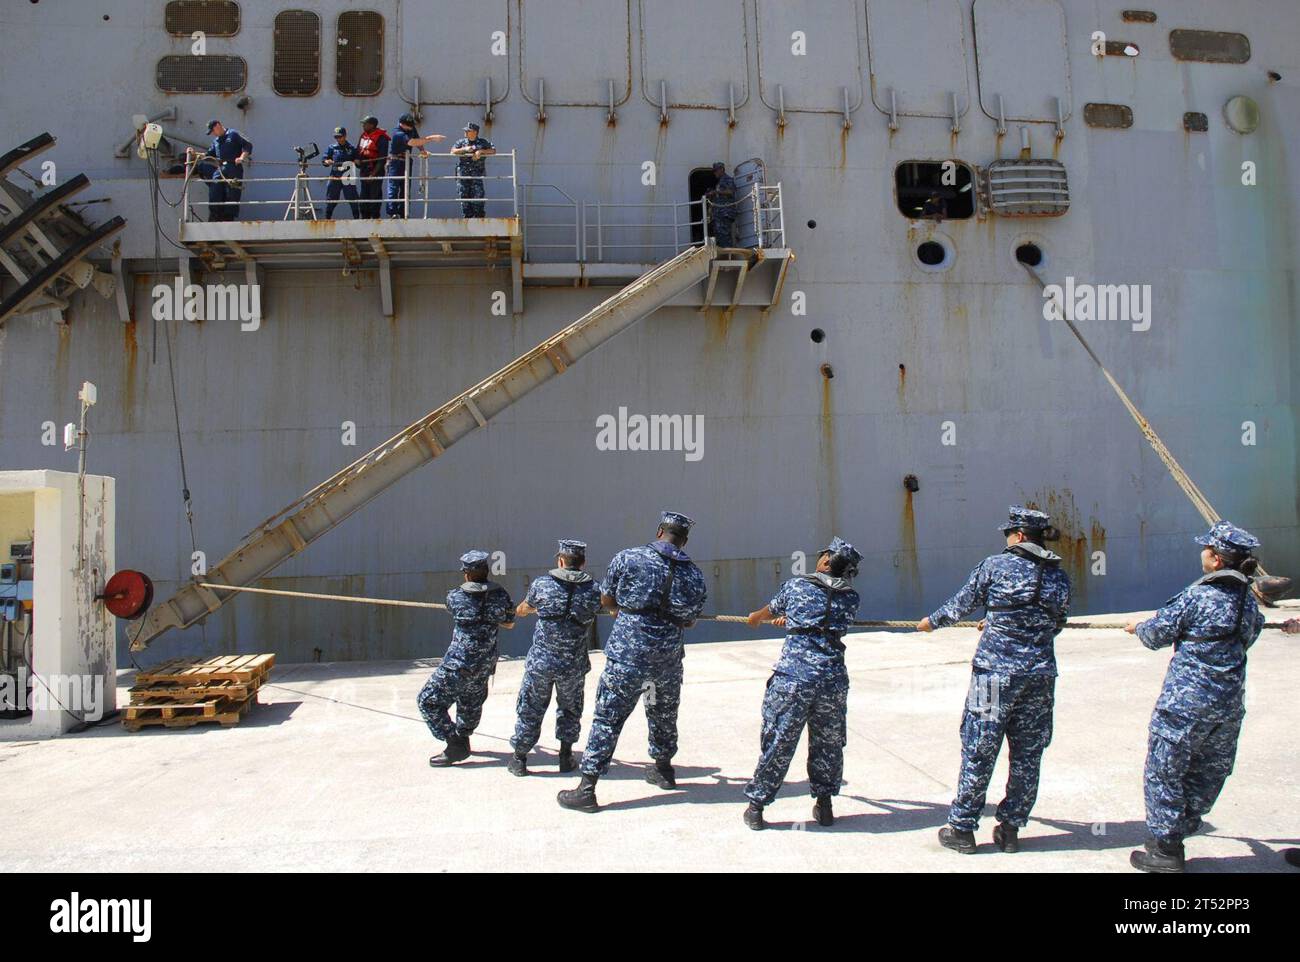 110724QL533-004 SOUDA BAY, Griechenland (24. Juli 2011) Linienführer, die der U.S. Naval Support Activity Souda Bay zugeteilt sind, helfen, während eines routinemäßigen Hafenbesuchs für das Amphibienangriffsschiff USS Bataan (LHD 5) am Marathi Pier eine Stirn zu positionieren. Marineblau Stockfoto